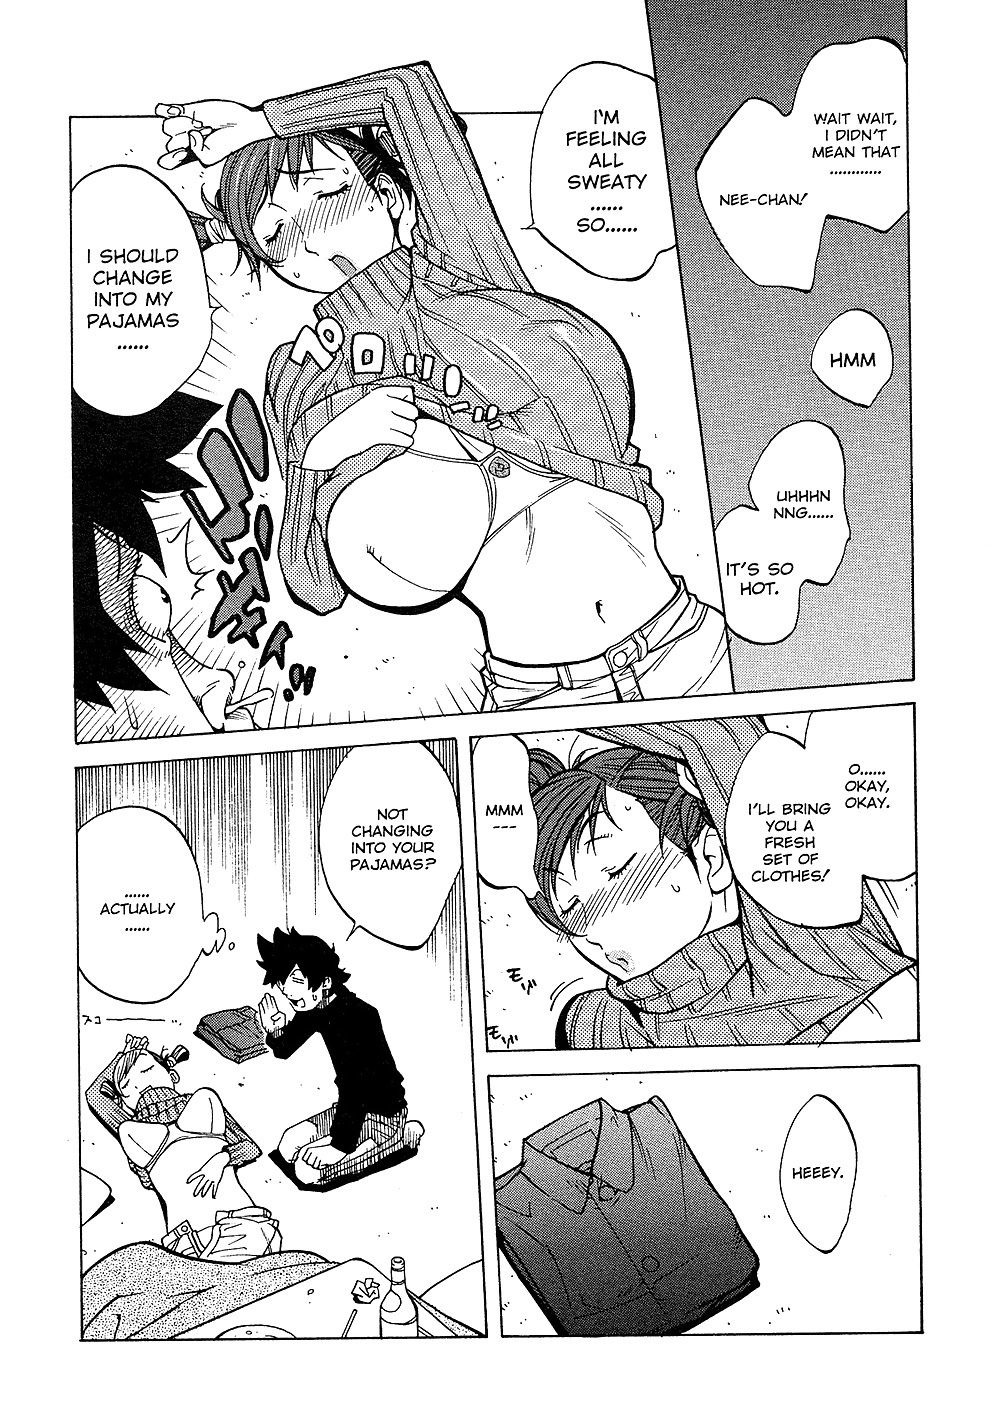 (comic hentai) yumisuke kotoyoshi erotic works #2
 #21624032